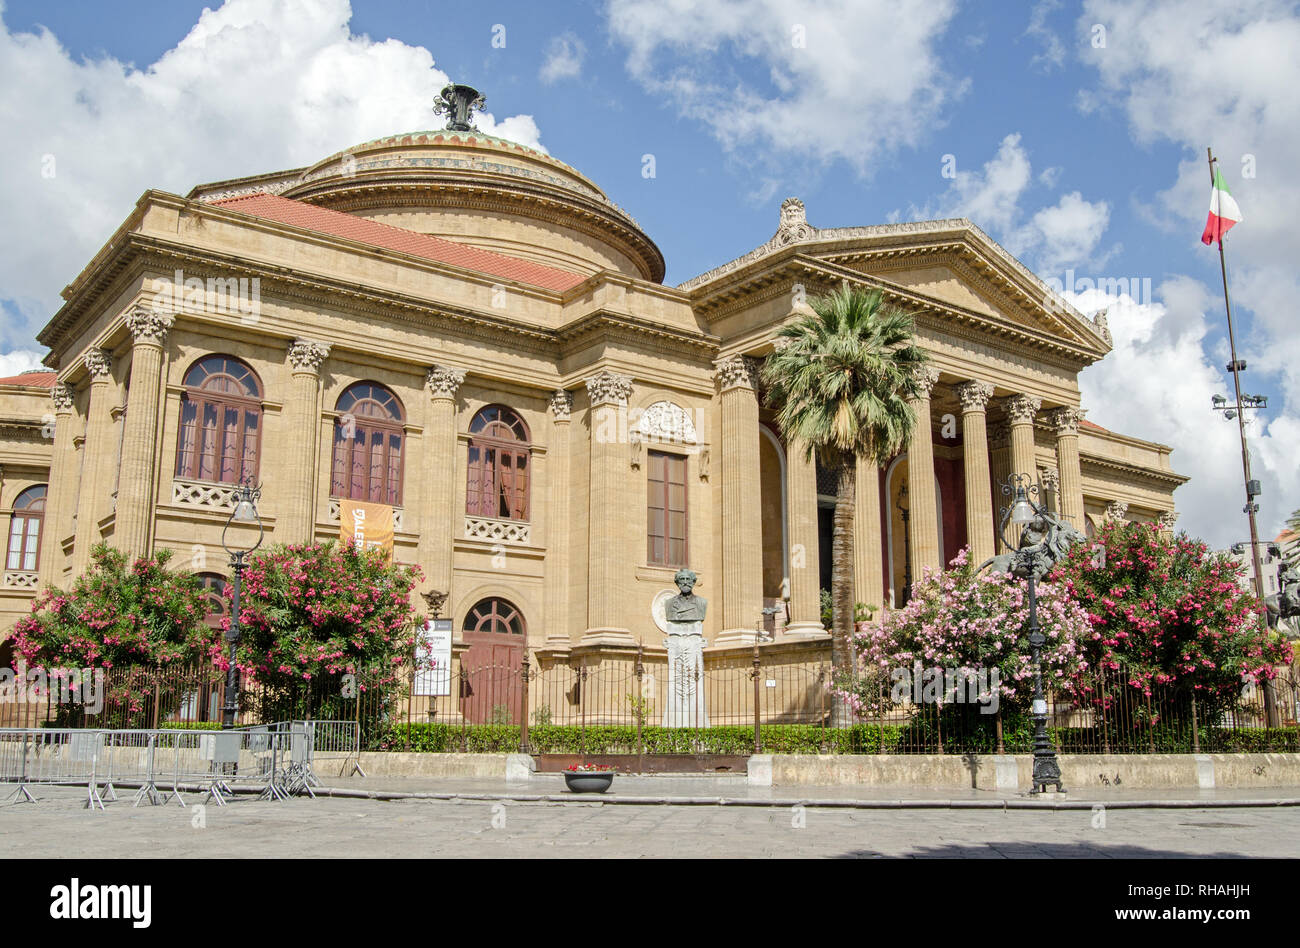 Voir l'historique de l'Opéra Teatro Massimo de Palerme, en Sicile. C'est la plus grande maison d'opéra en Italie et réputé pour son acoustique. Banque D'Images